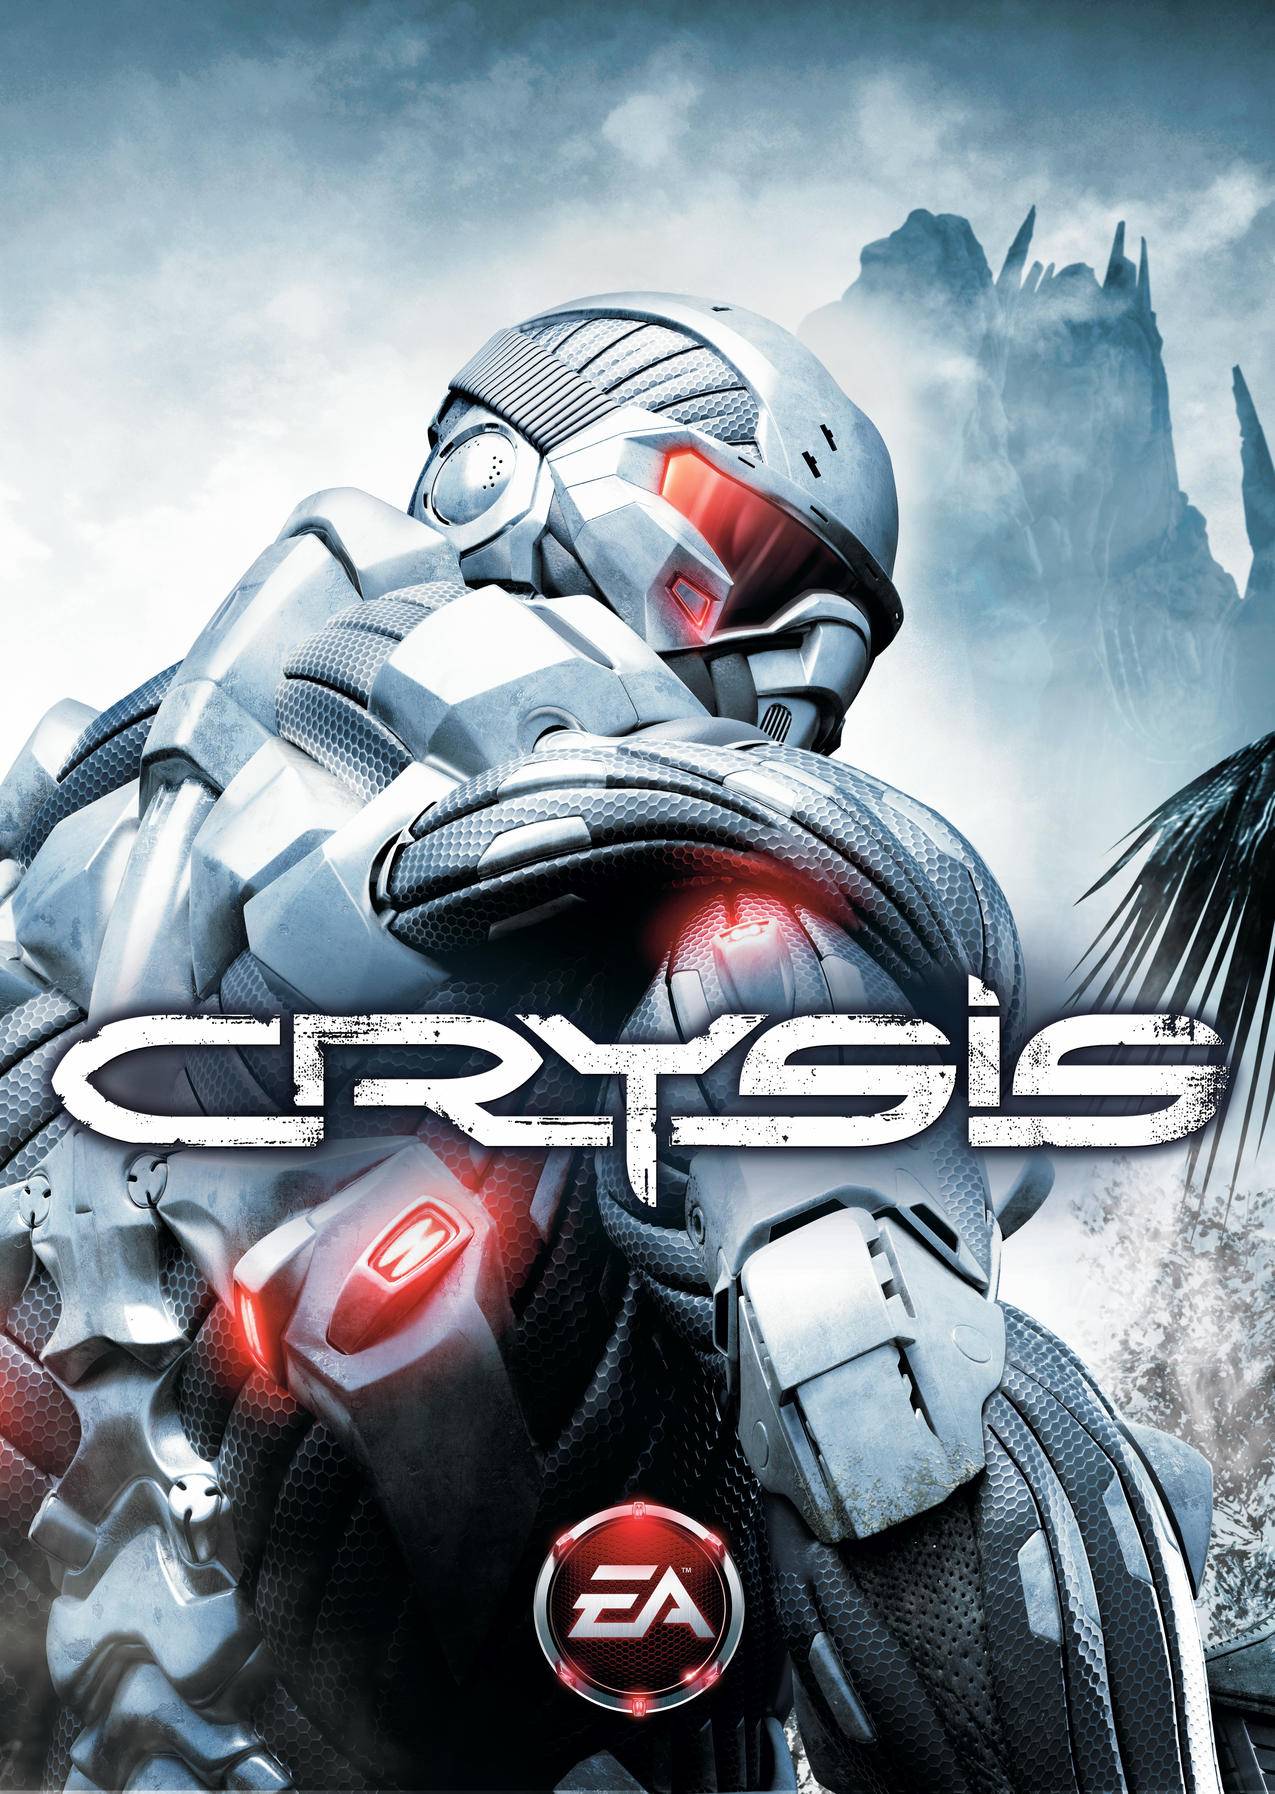 Crysis2,孤岛危机,Crysis3,视频游戏